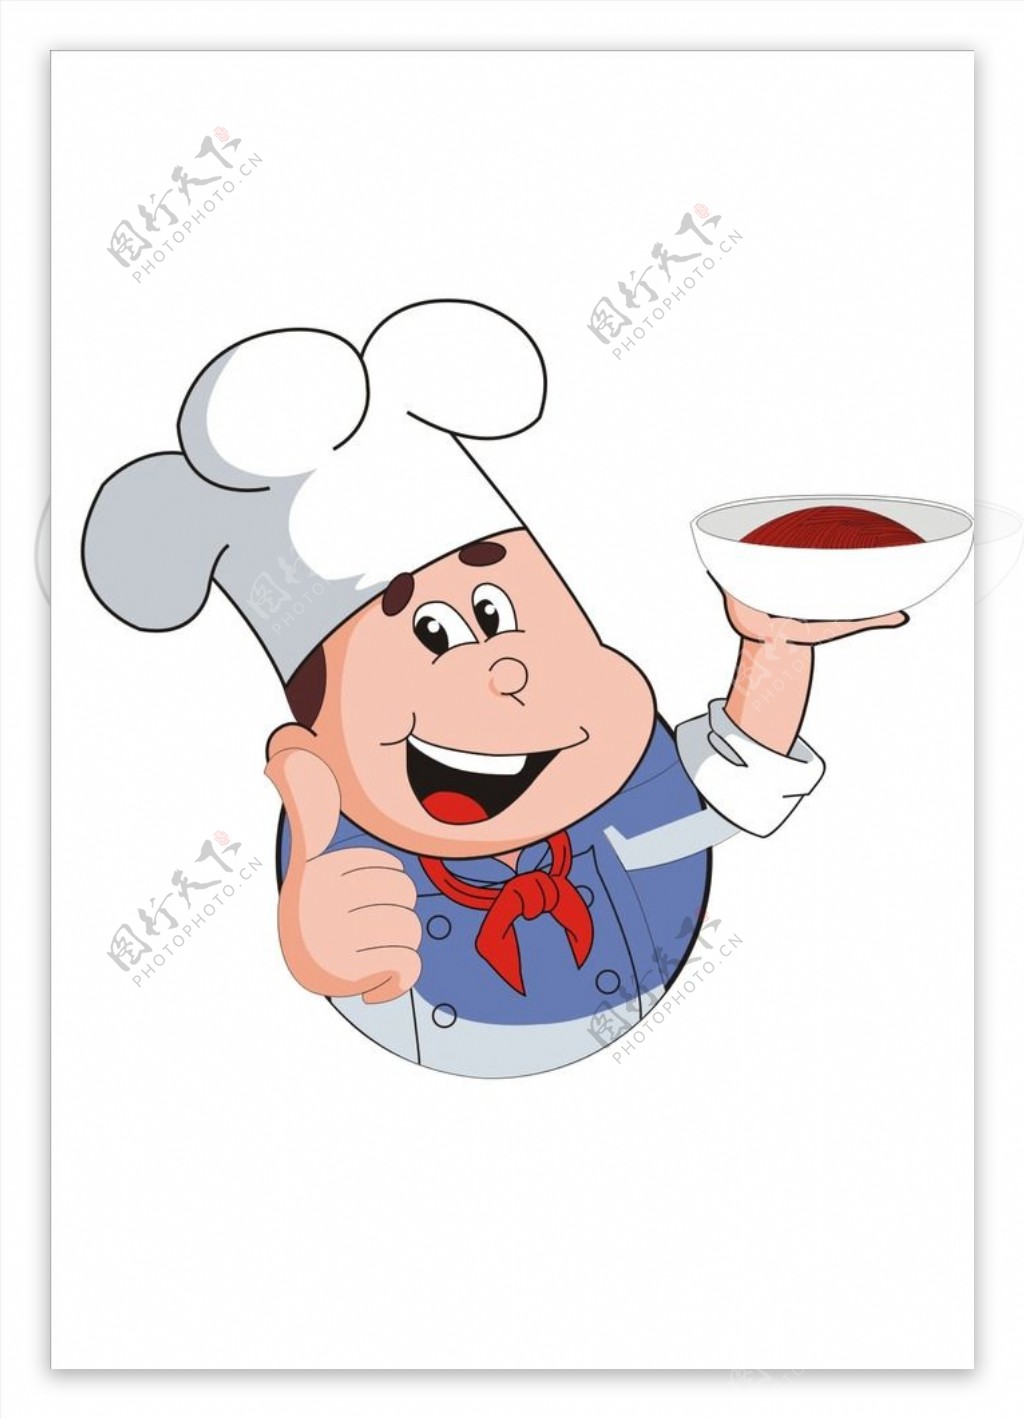 端面碗的小厨师图片